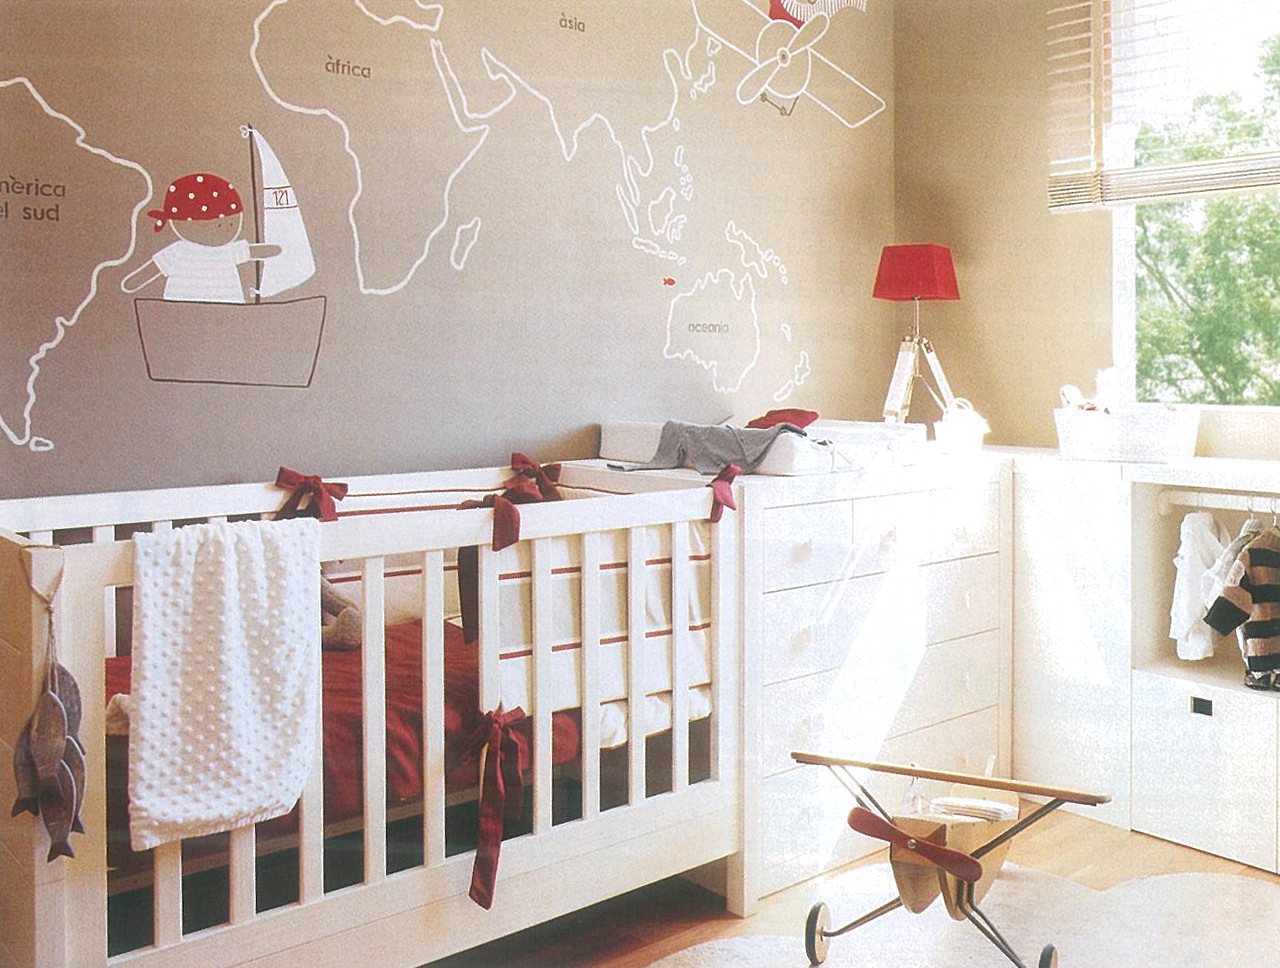 [Casa de valentina - via El Mueble - para parede de quartos infantis[3].jpg]